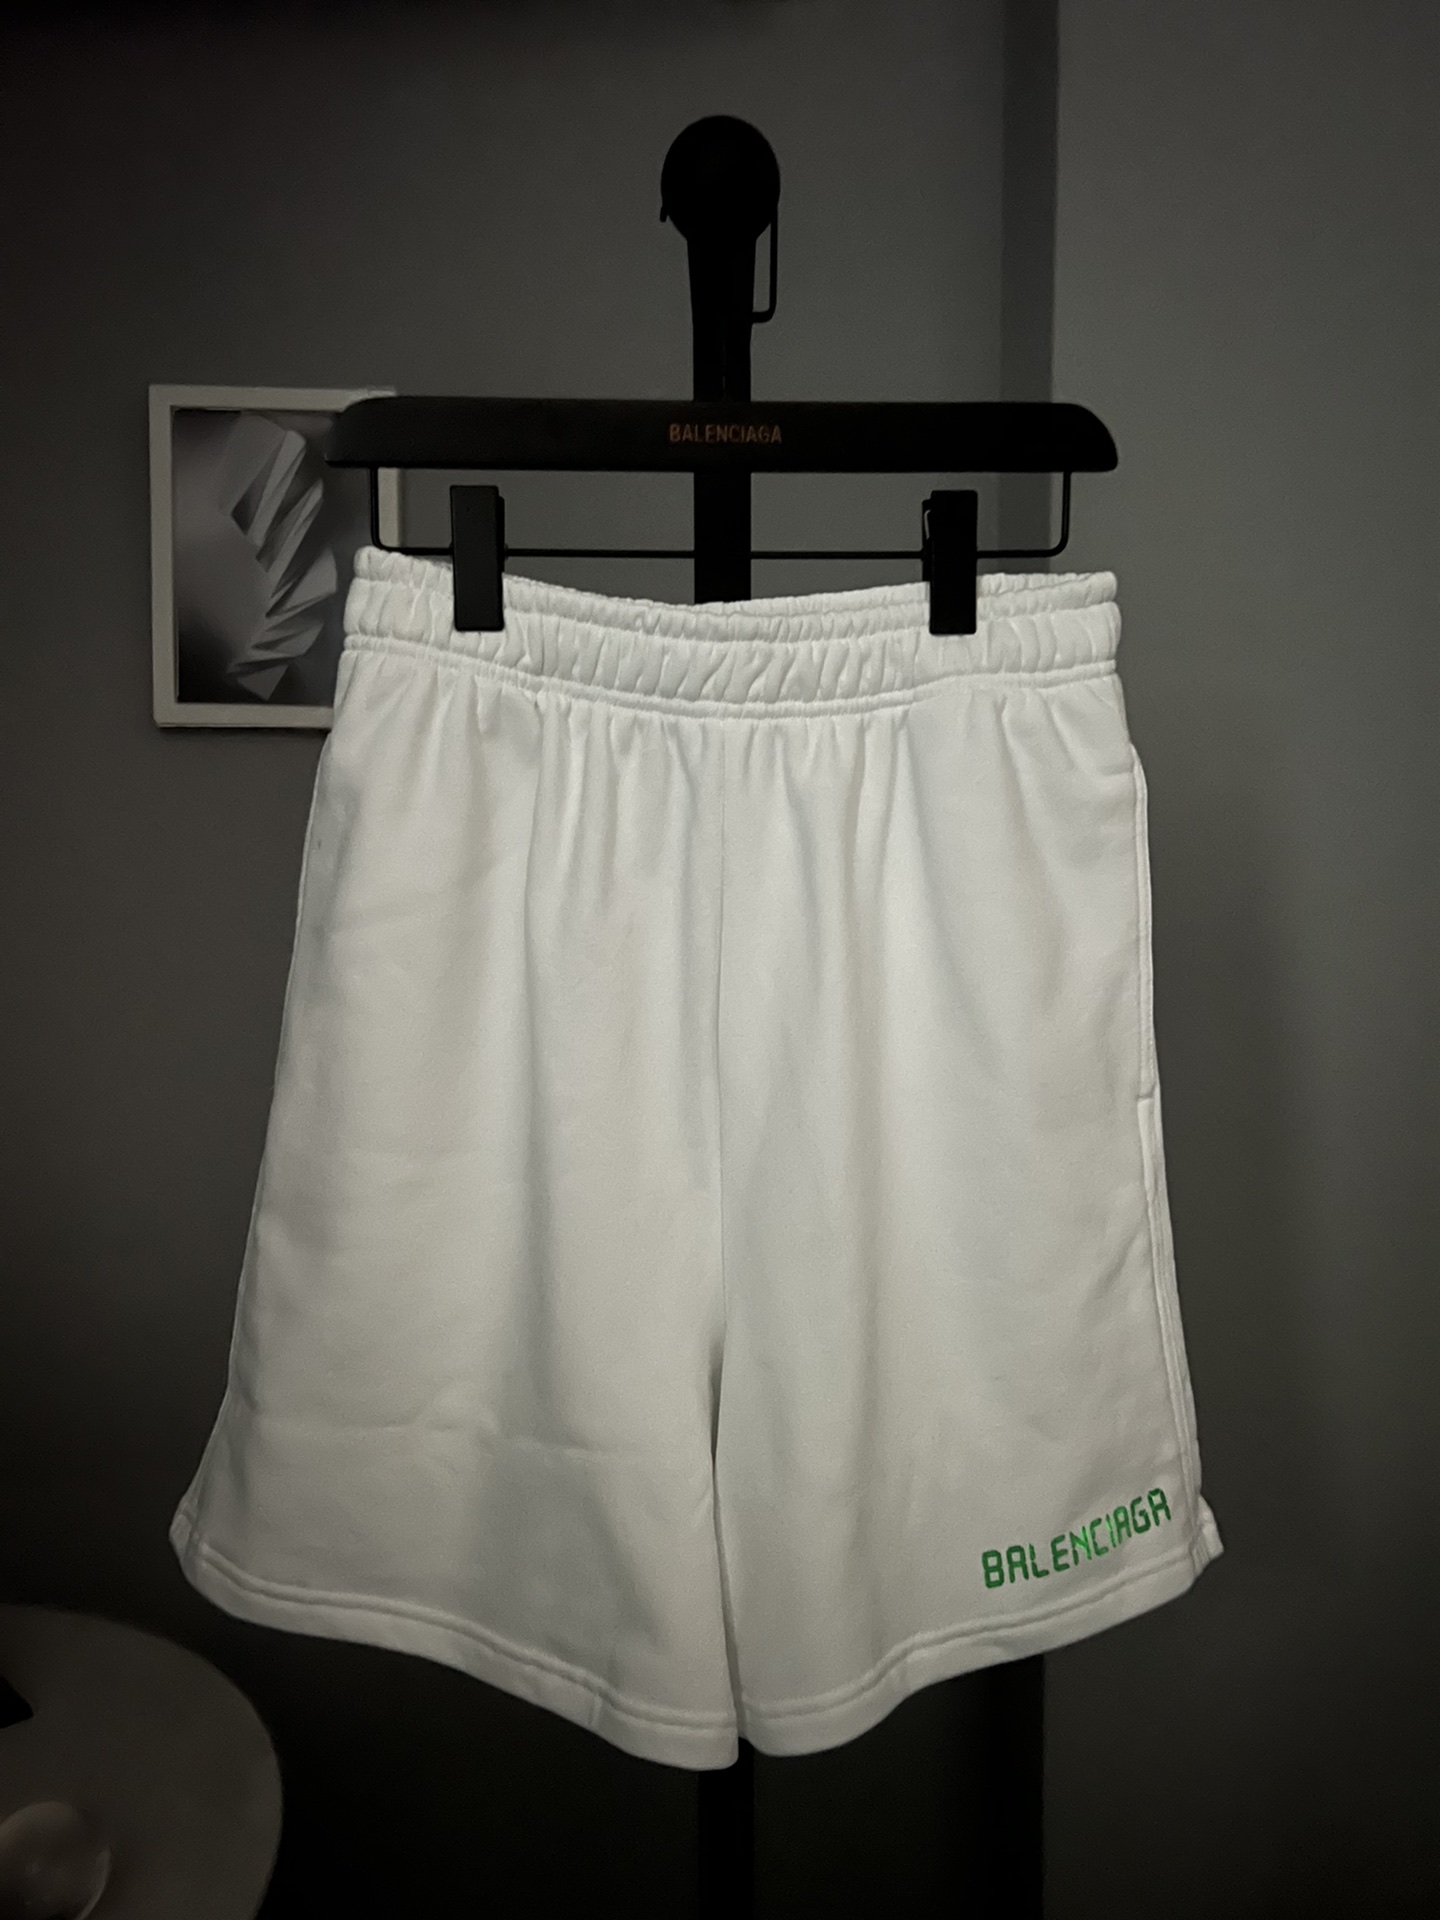 #520短裤# BALENCI*GA巴黎#限定款